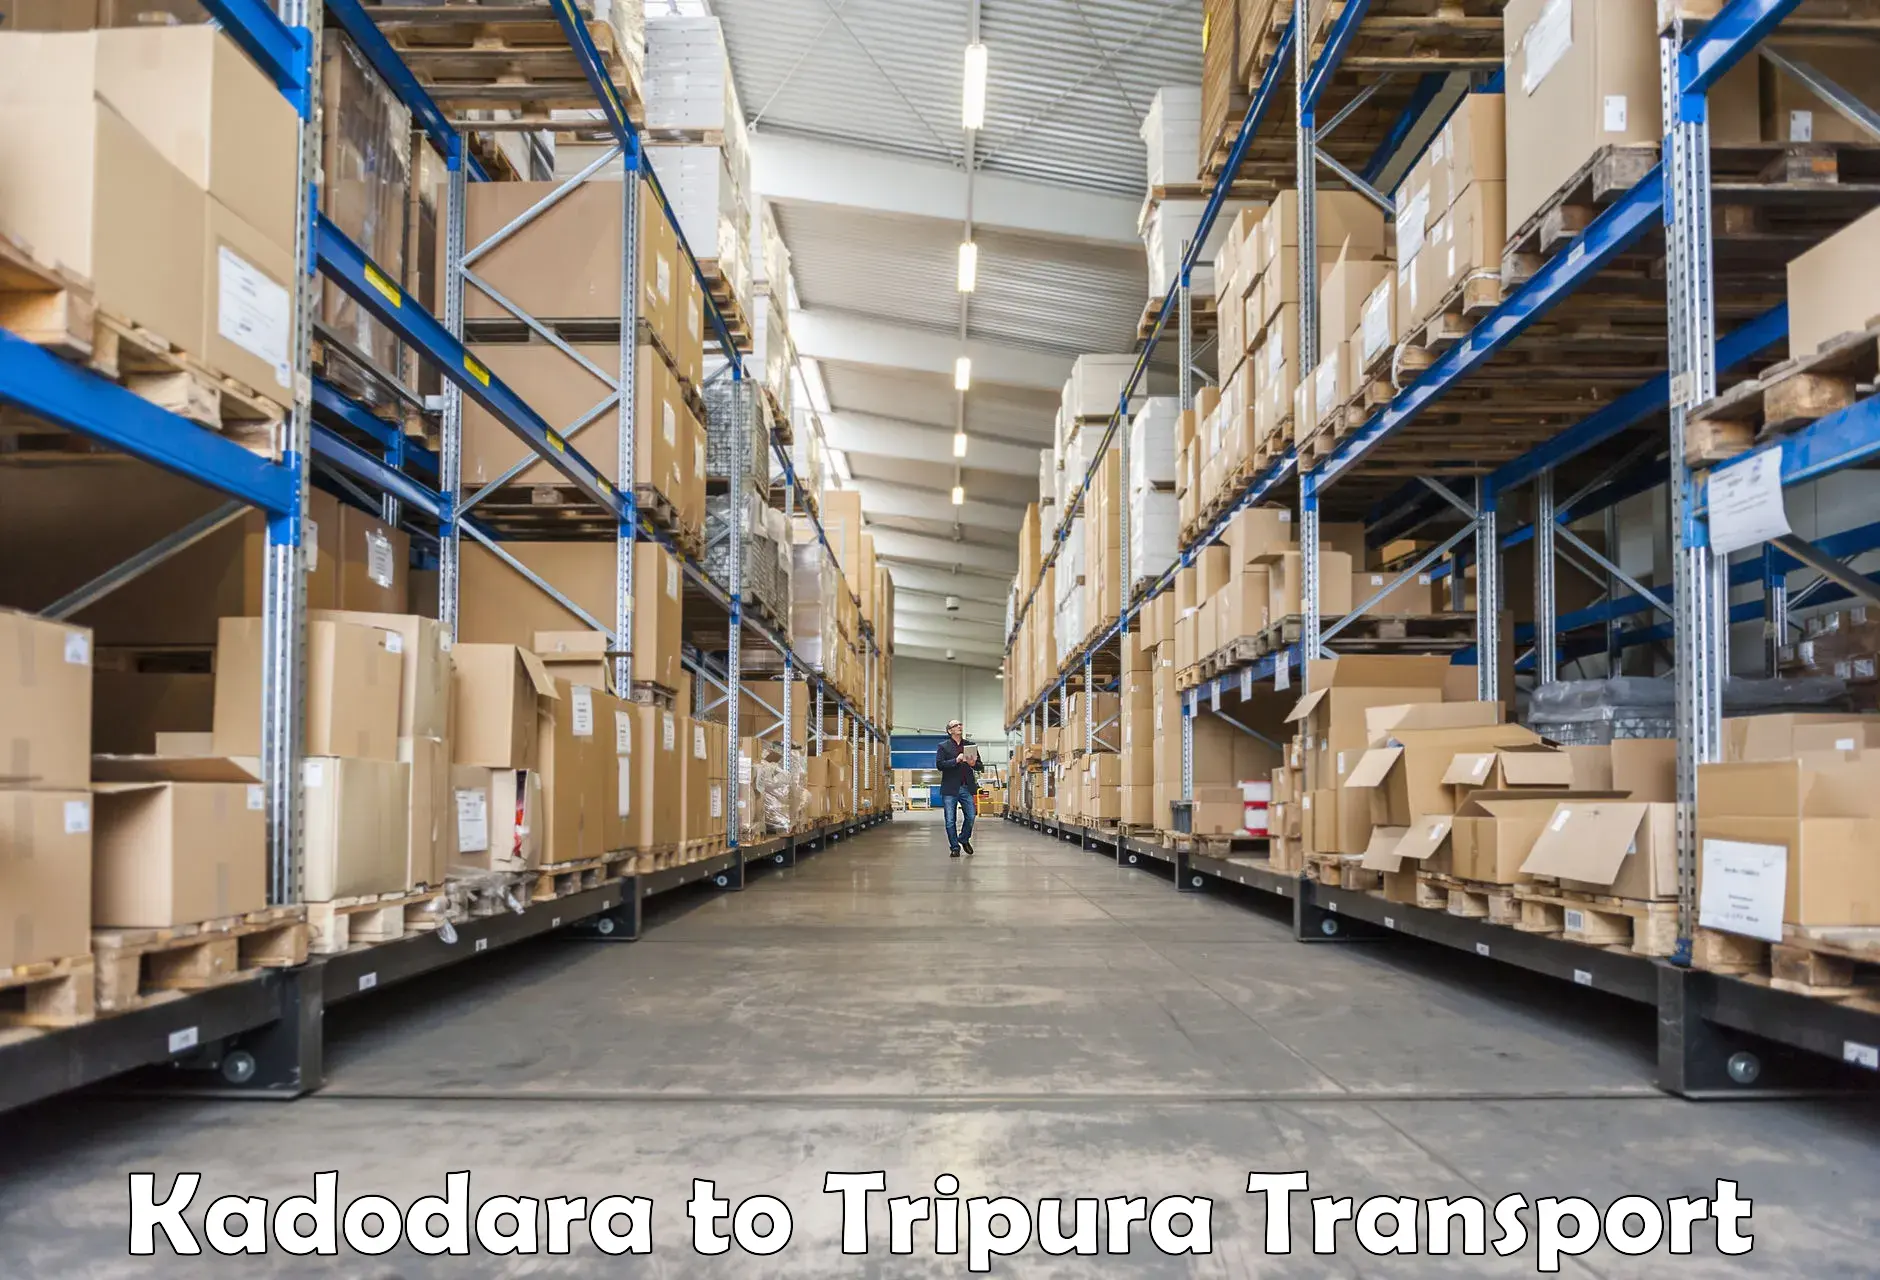 Transport in sharing Kadodara to Udaipur Tripura